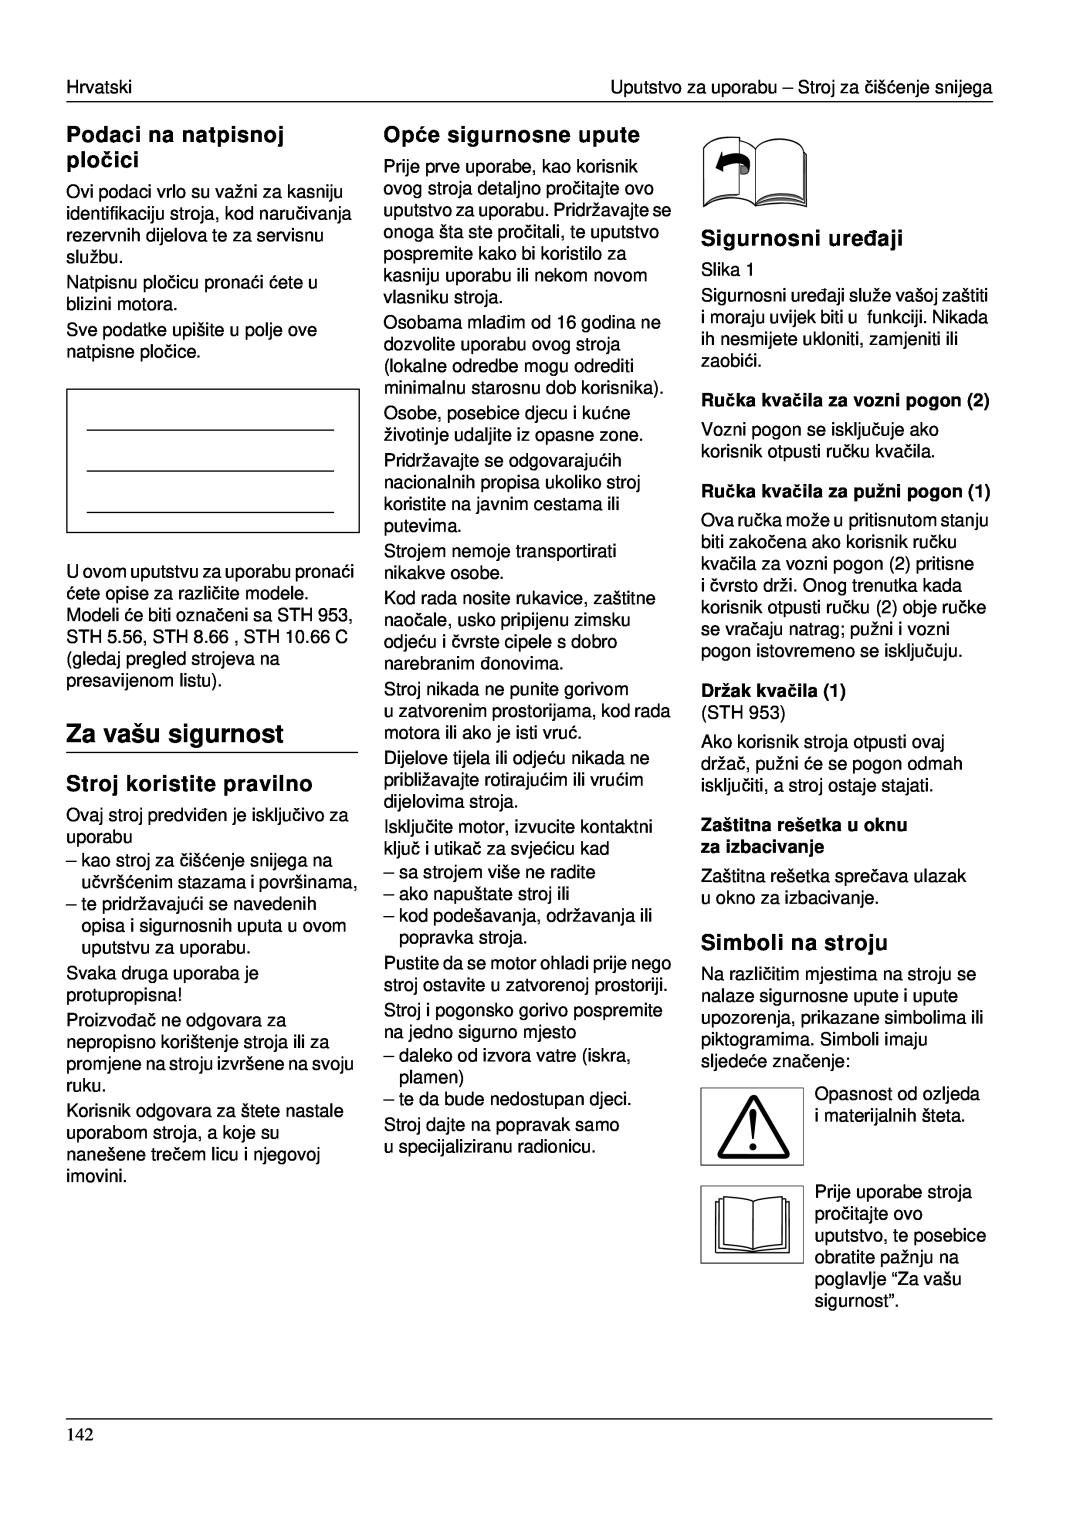 Karcher STH 953 manual Za vašu sigurnost, Podaci na natpisnoj pločici, Stroj koristite pravilno, Opće sigurnosne upute 